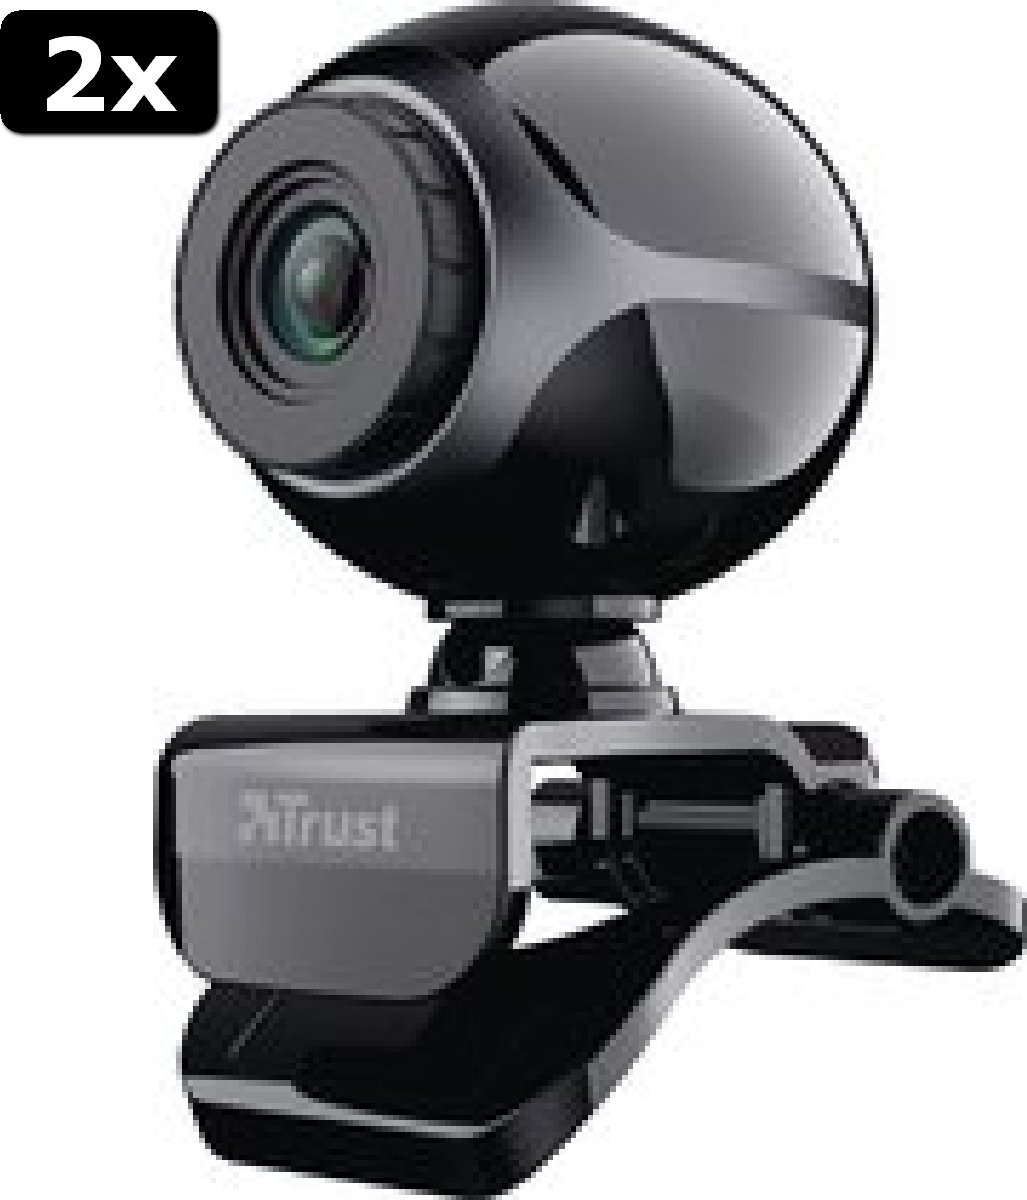 2x Trust Exis - Webcam